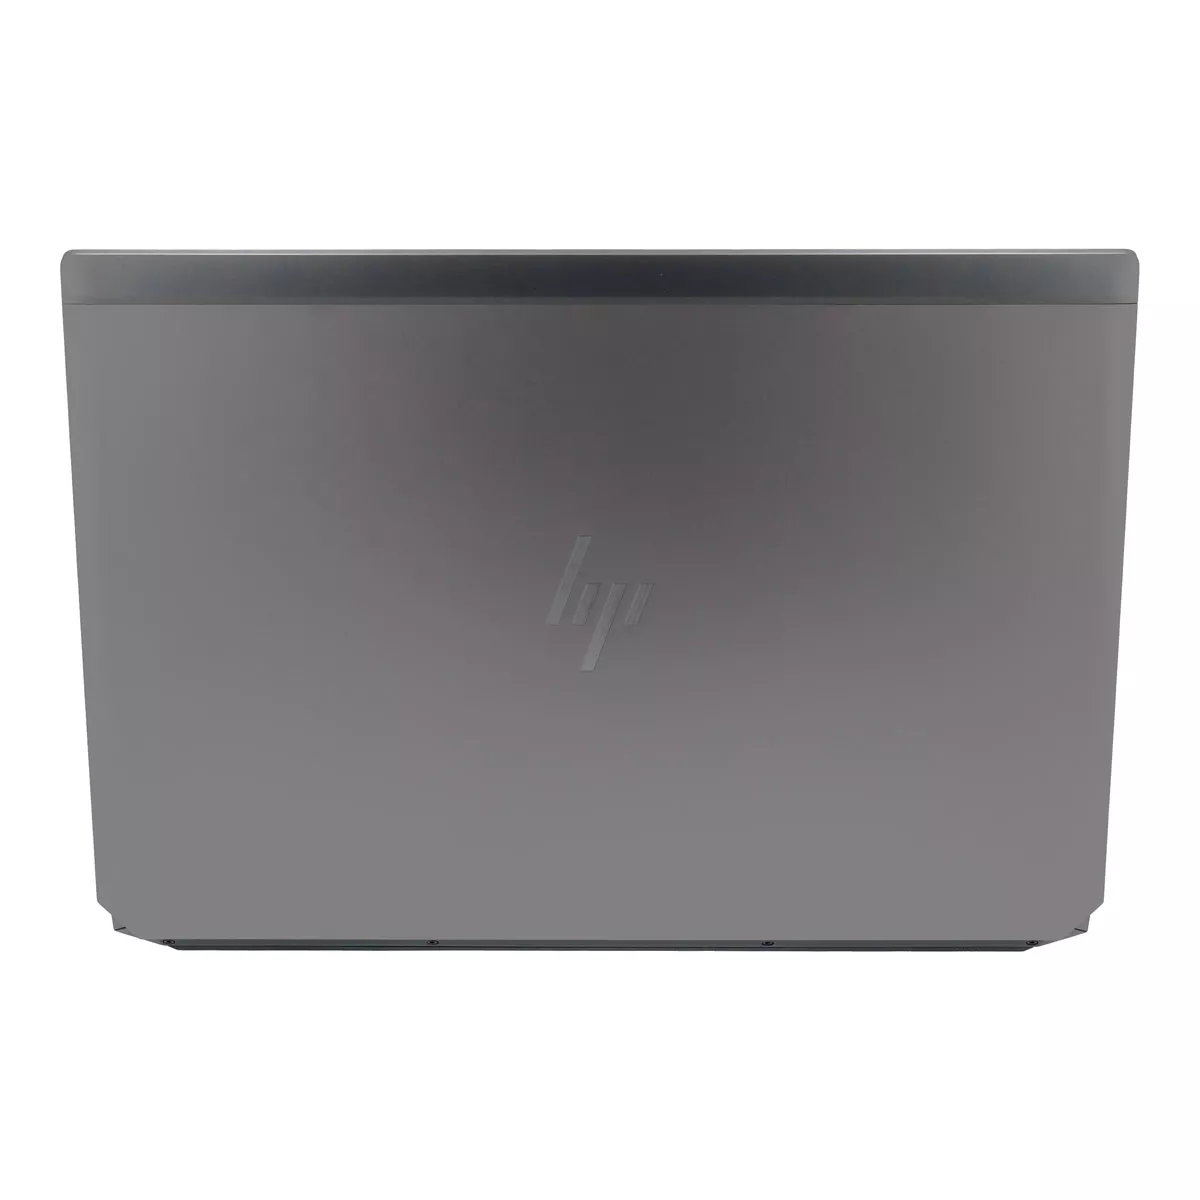 HP ZBook 17 G6 Core i7 9850H Full-HD nVidia Quadro RTX 5000 64 GB 1 TB M.2 nVME SSD Webcam A